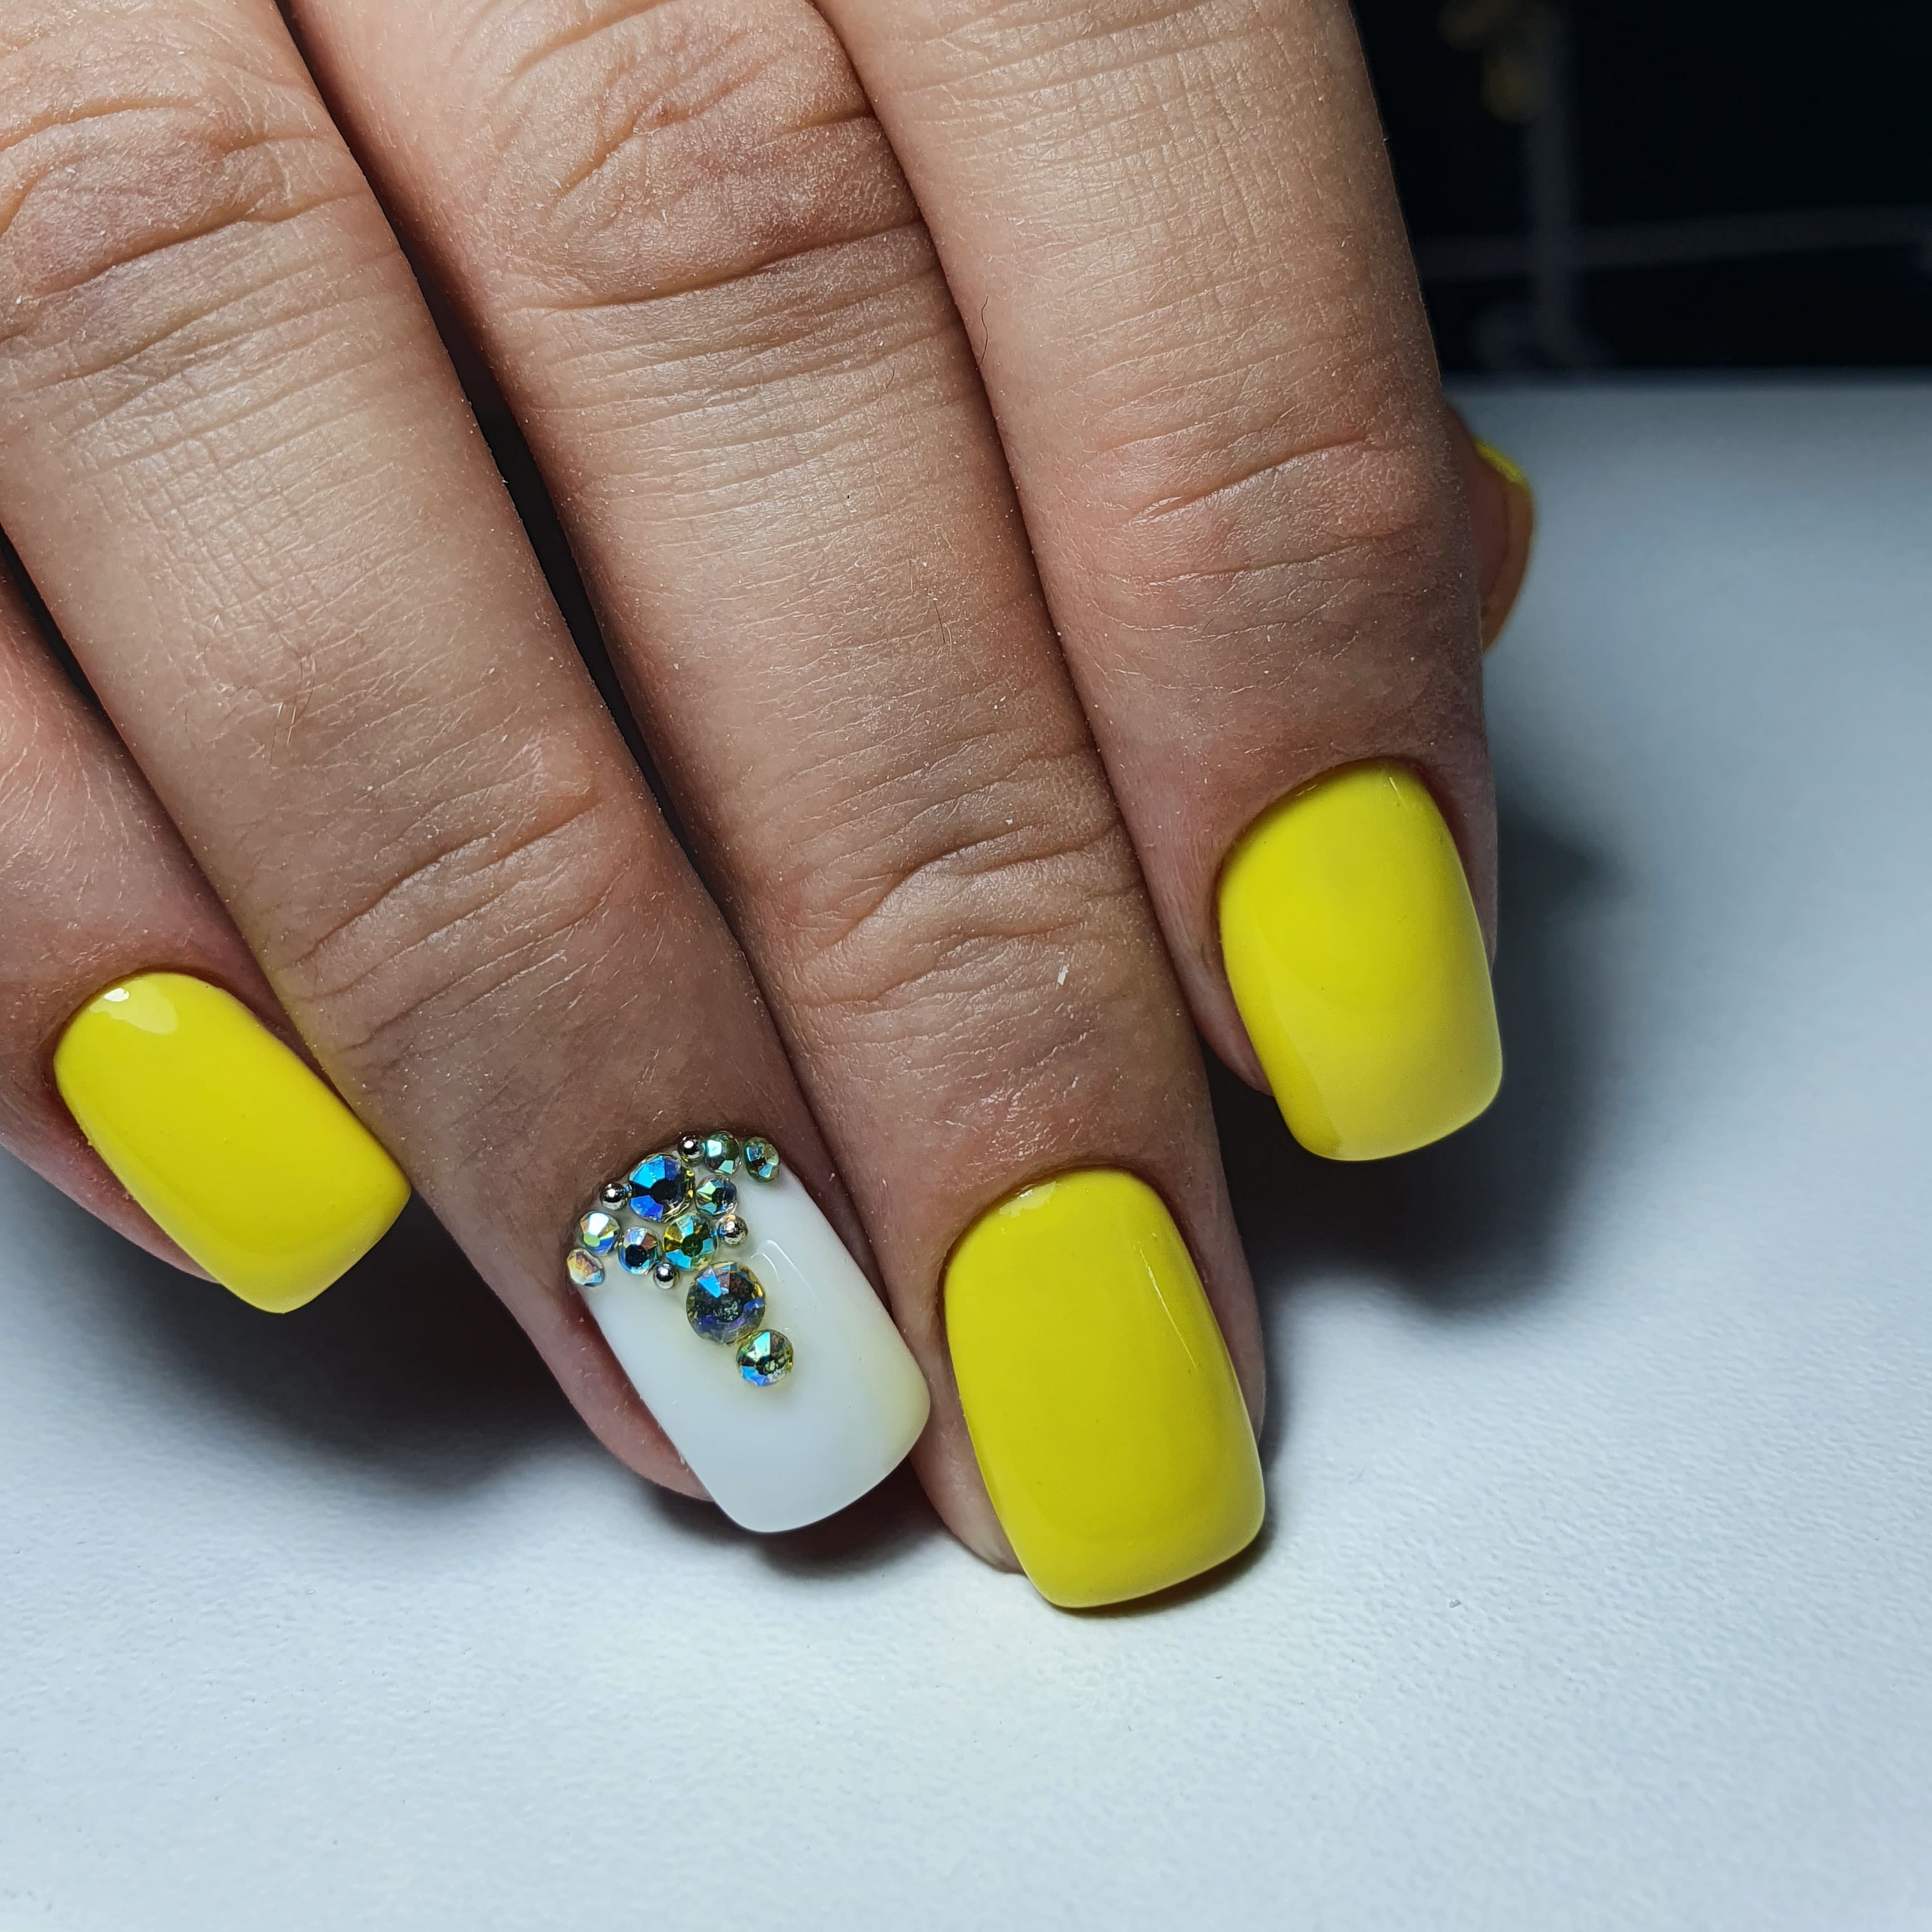 Маникюр со стразами в желтом цвете на короткие ногти.